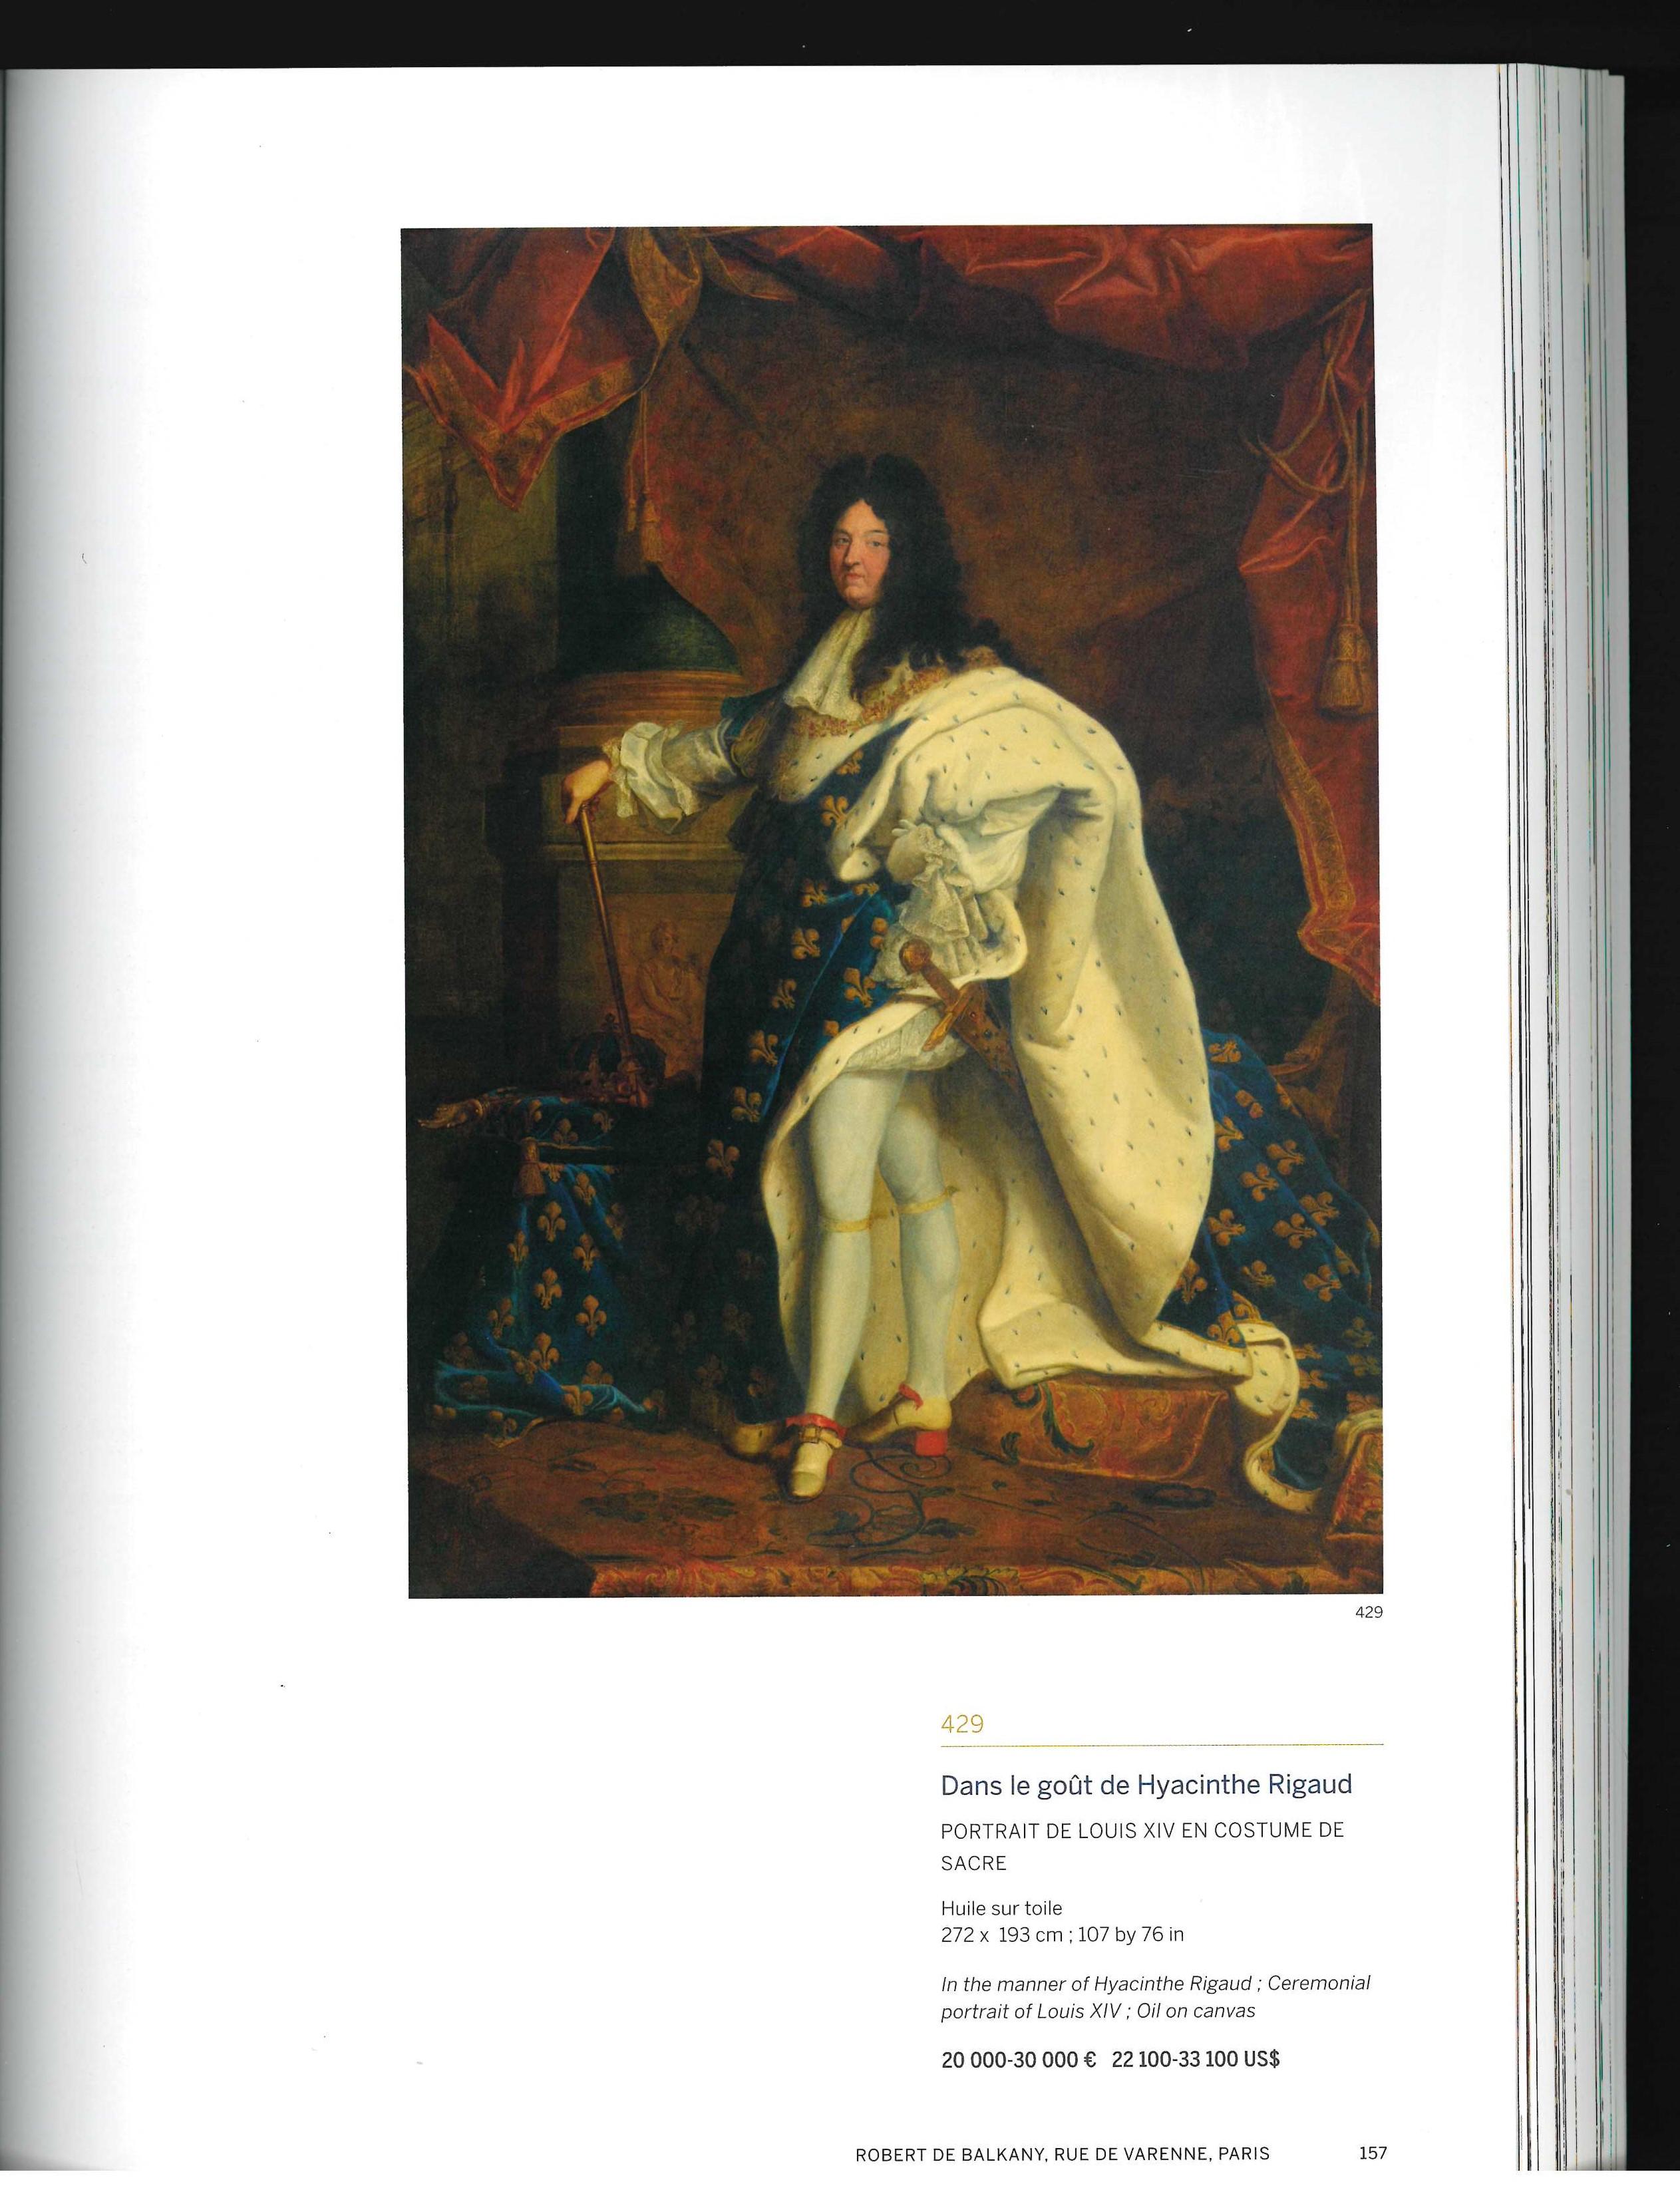 Robert de Balkany y la princesa María Gabriela de Saboya (Libro) Papel en venta